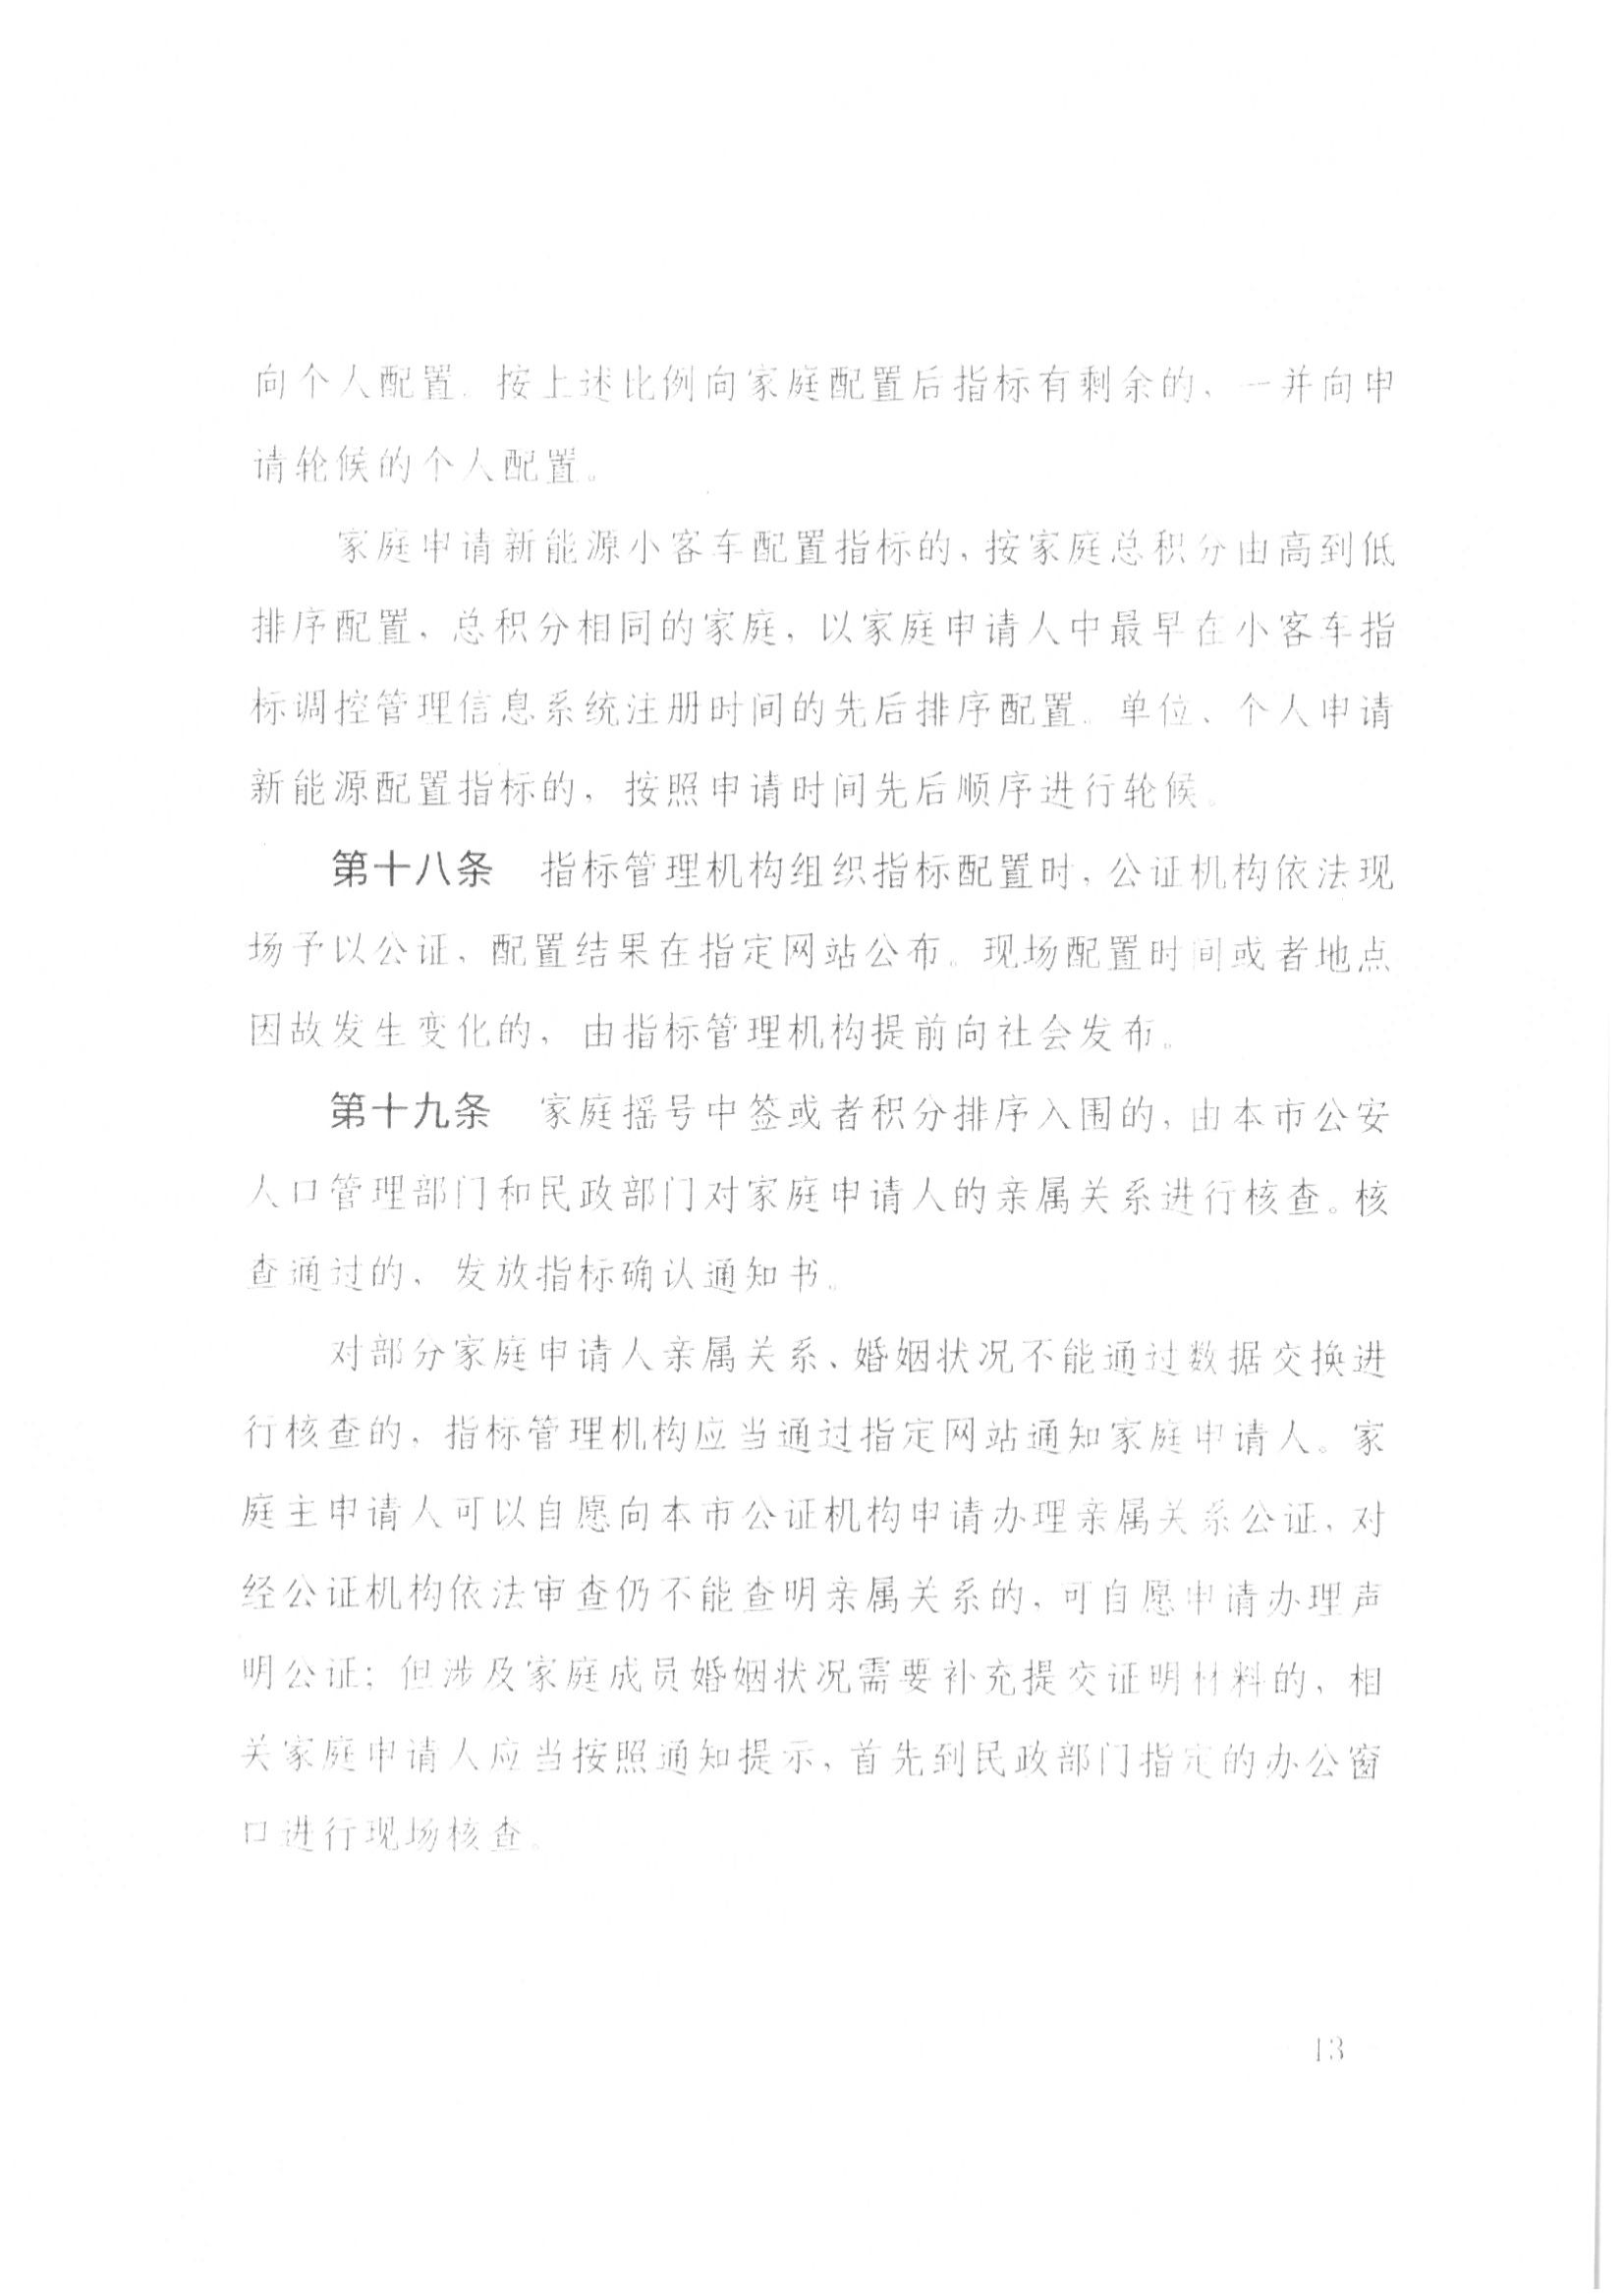 13、北京市公证协会关于印发《北京市公证协会规范执业指引》第13号的通知_35